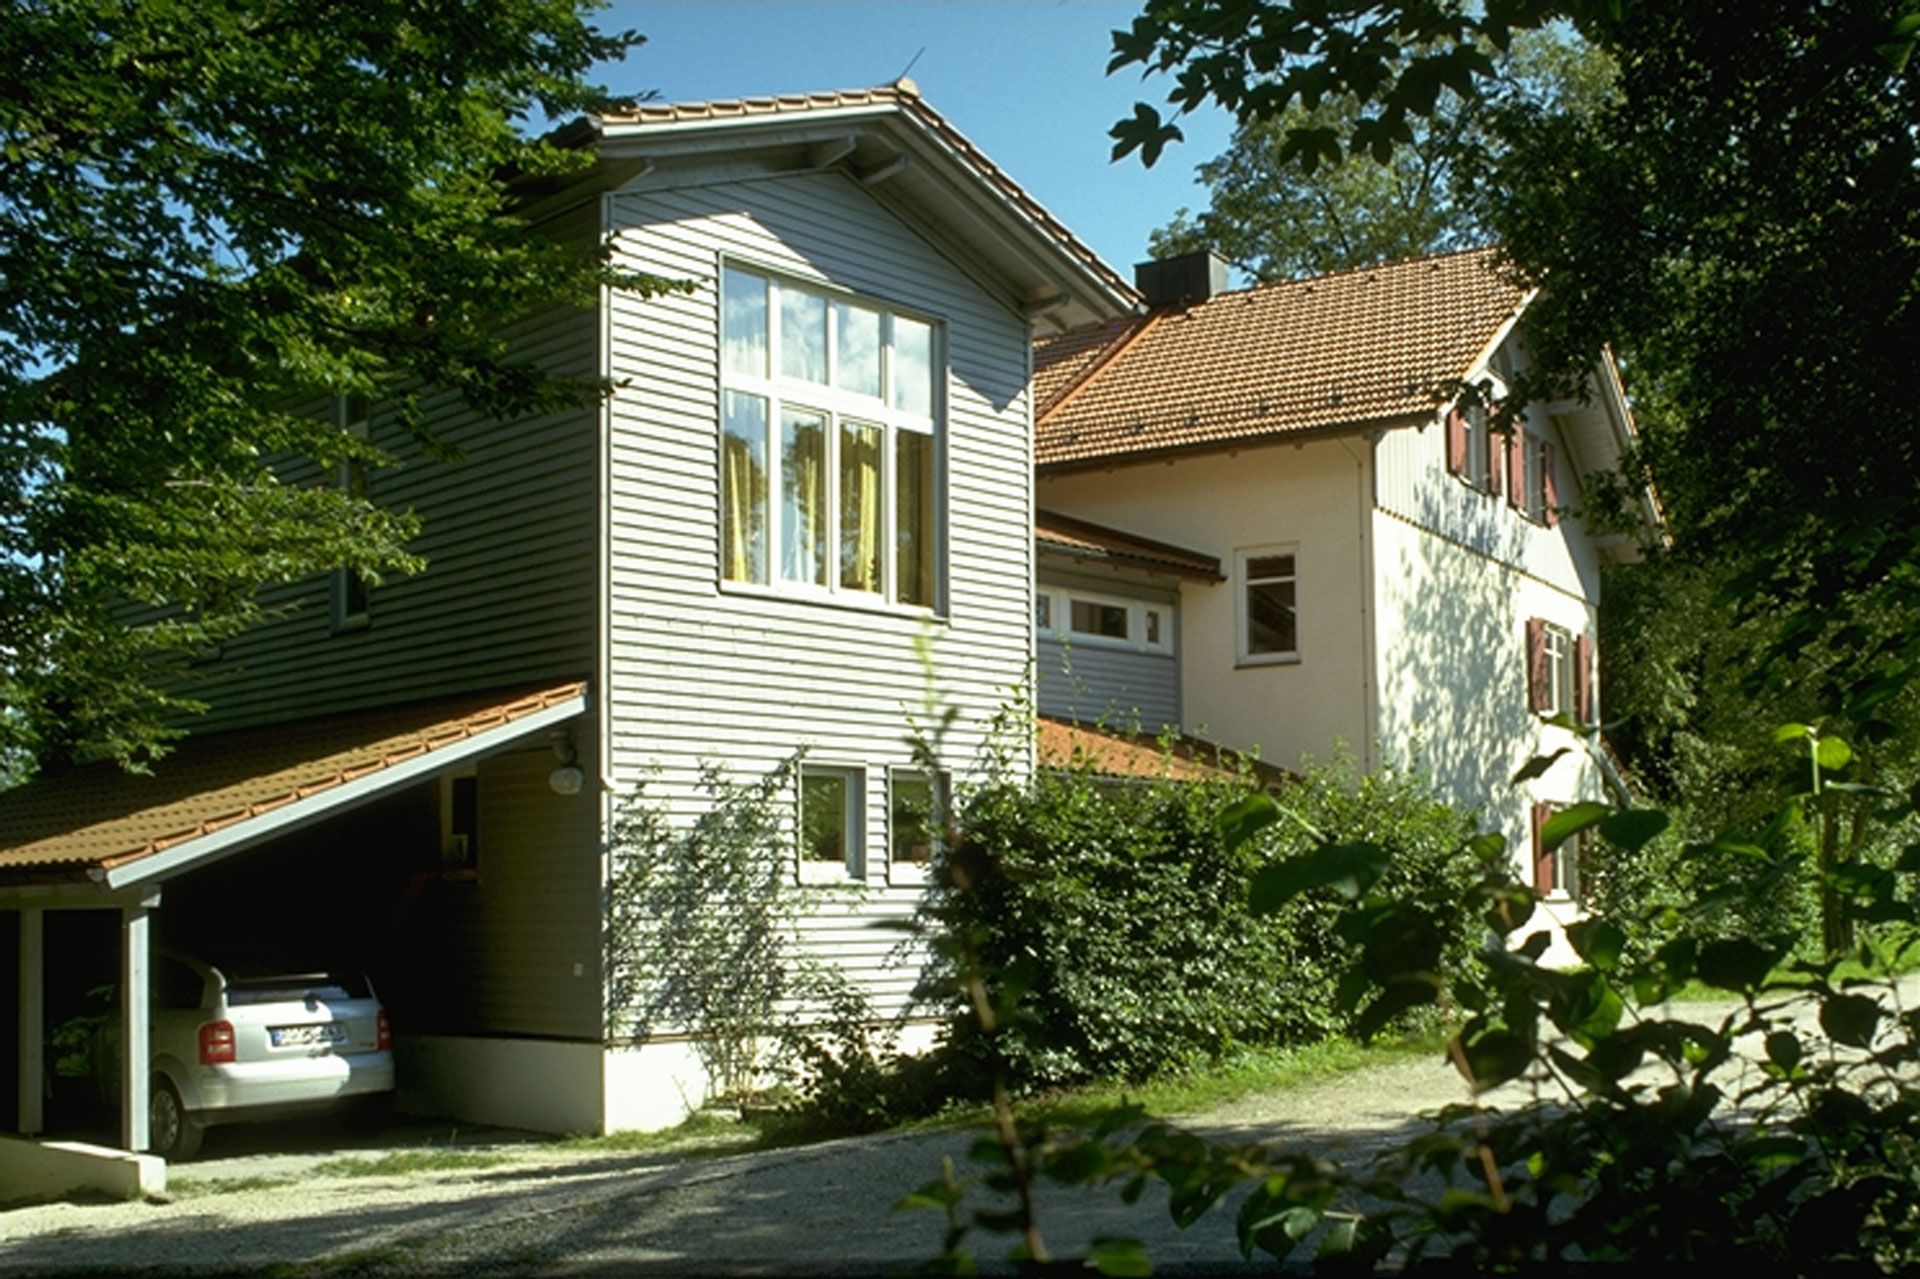 3-stöckiges Wohnhaus, teils in weißer Farbe, teils in grauer Holzlattenbauweise, mit orangem Giebeldach und angrenzendem Carport